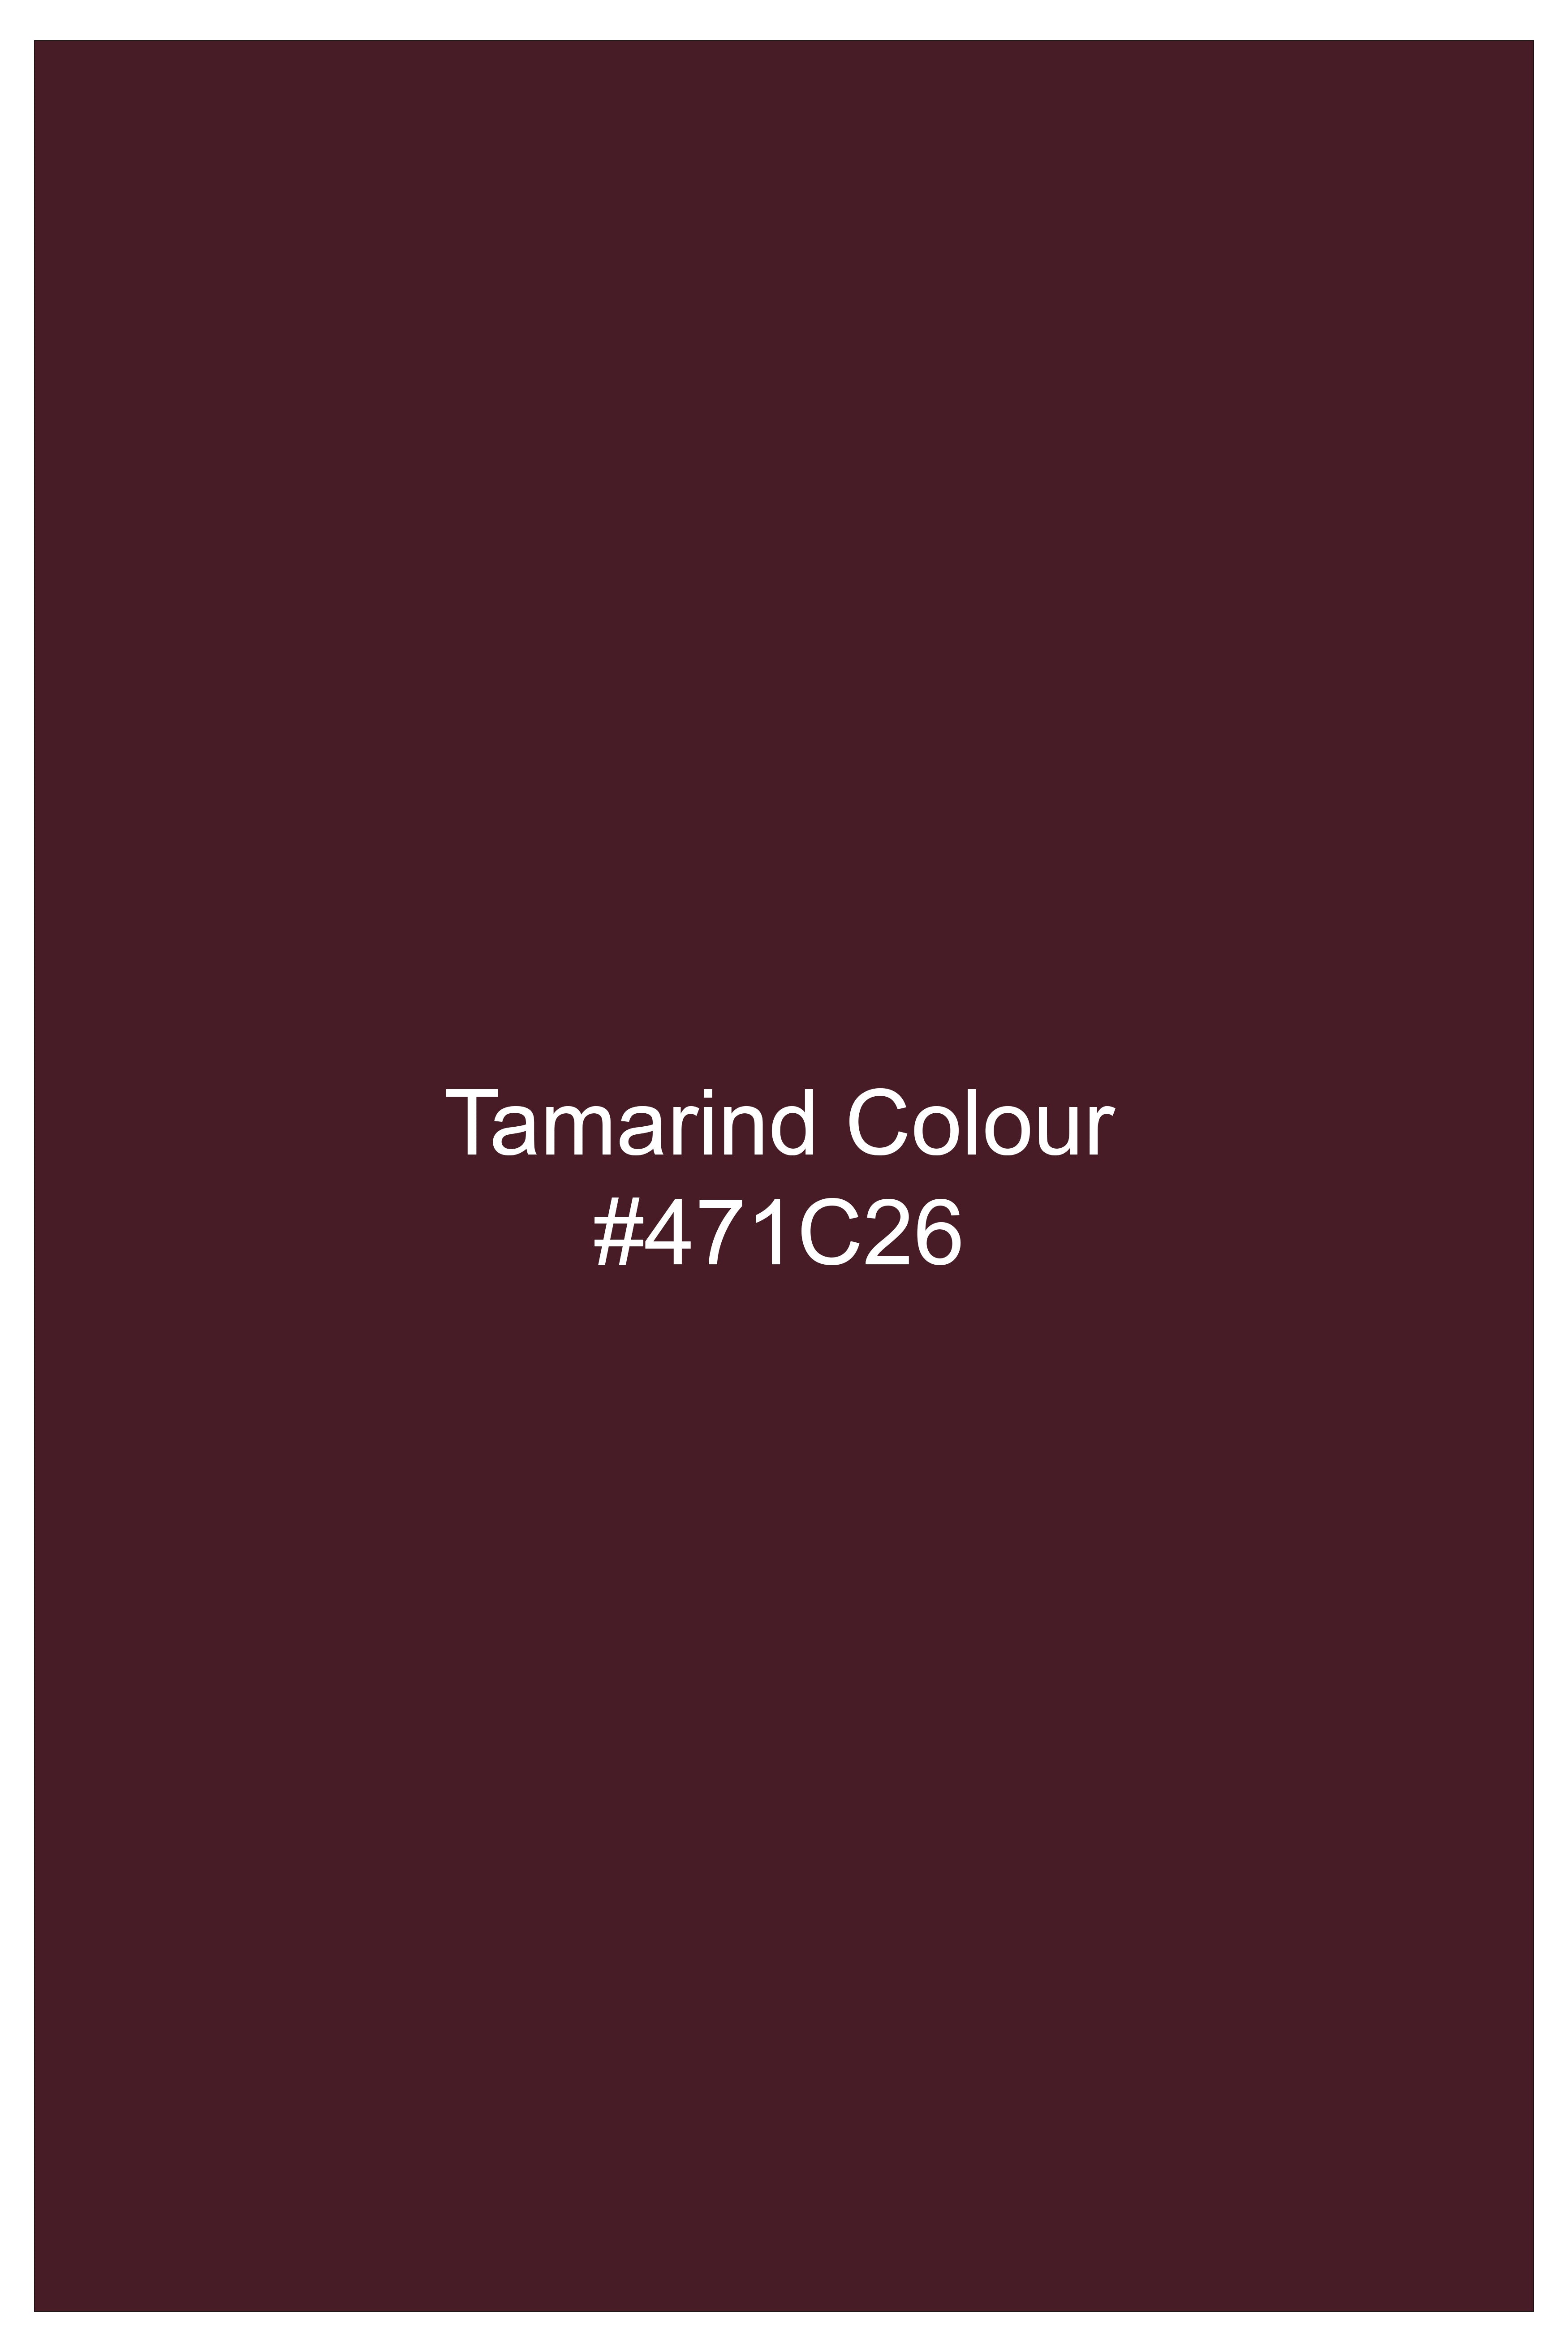 Tamarind Maroon Wool Blend Bandhgala Suit